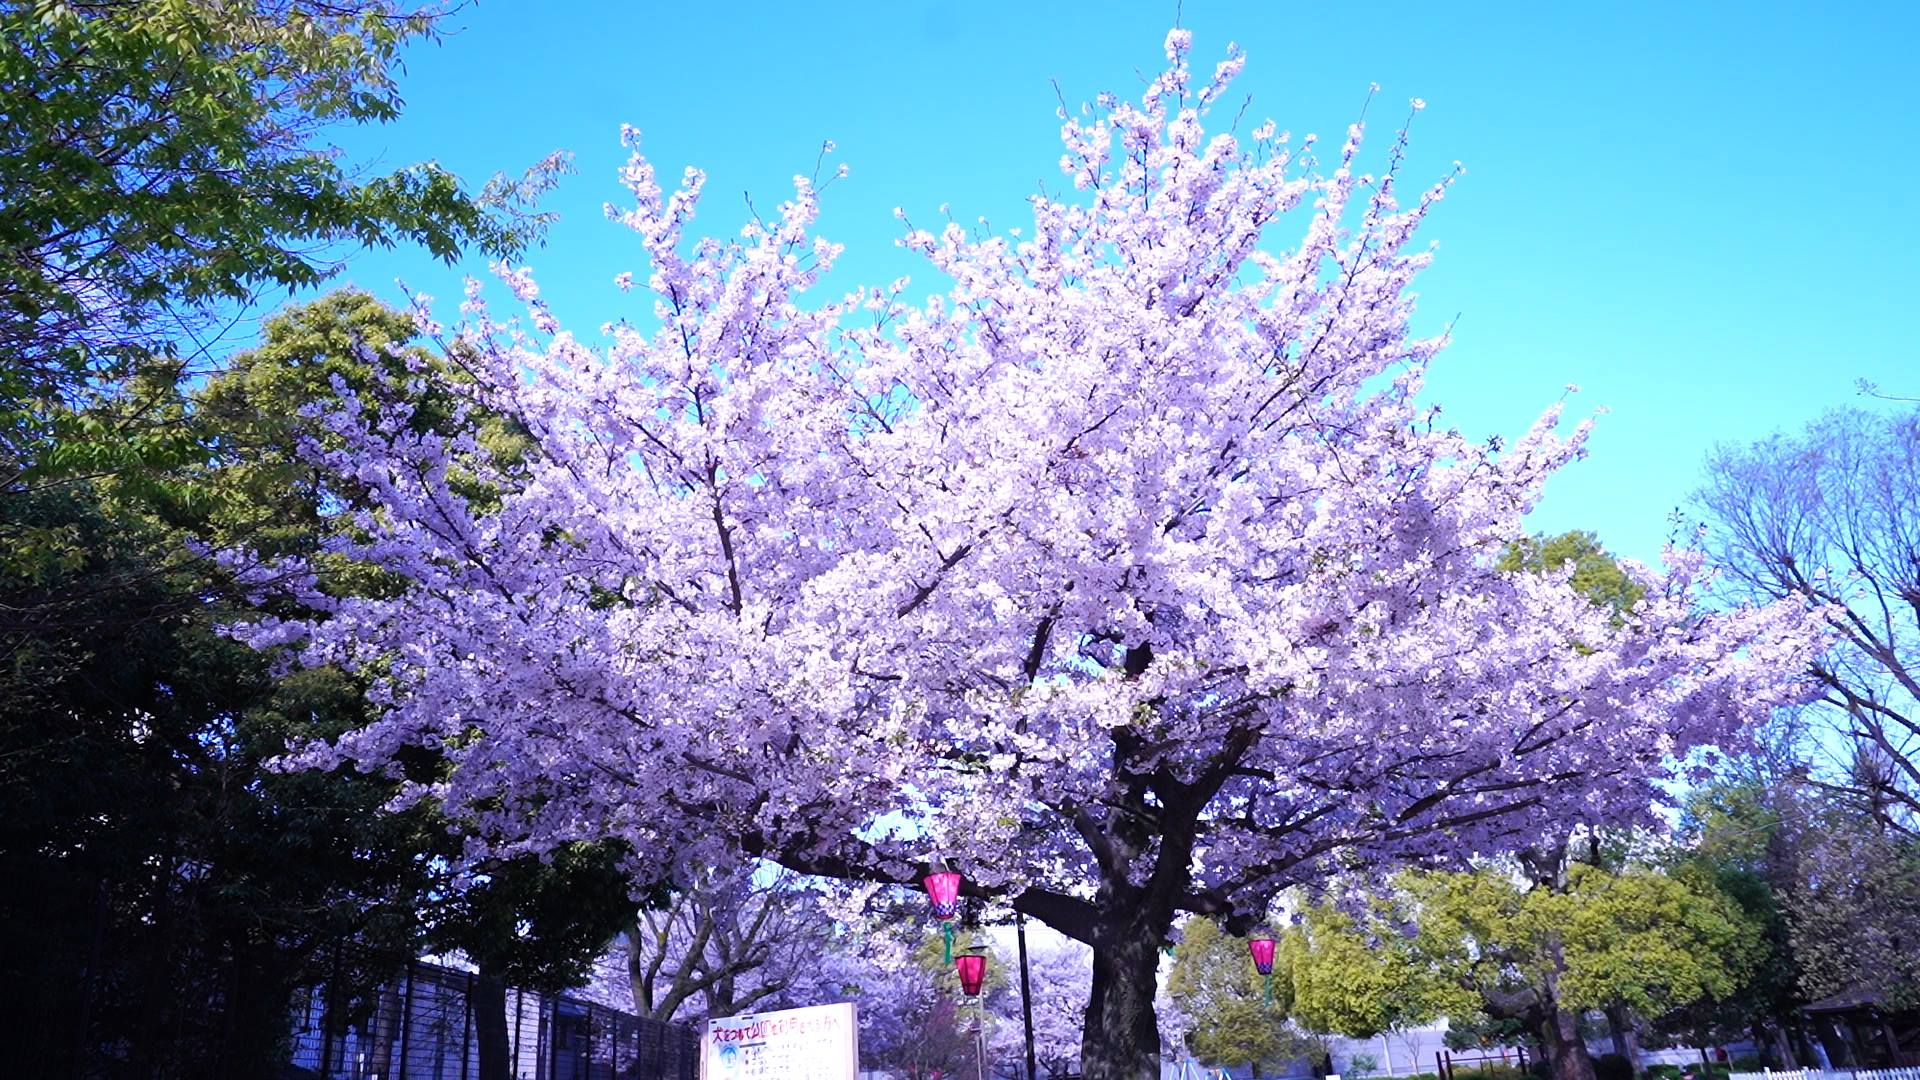 【生野の景色】生野にもある桜のキレイな場所